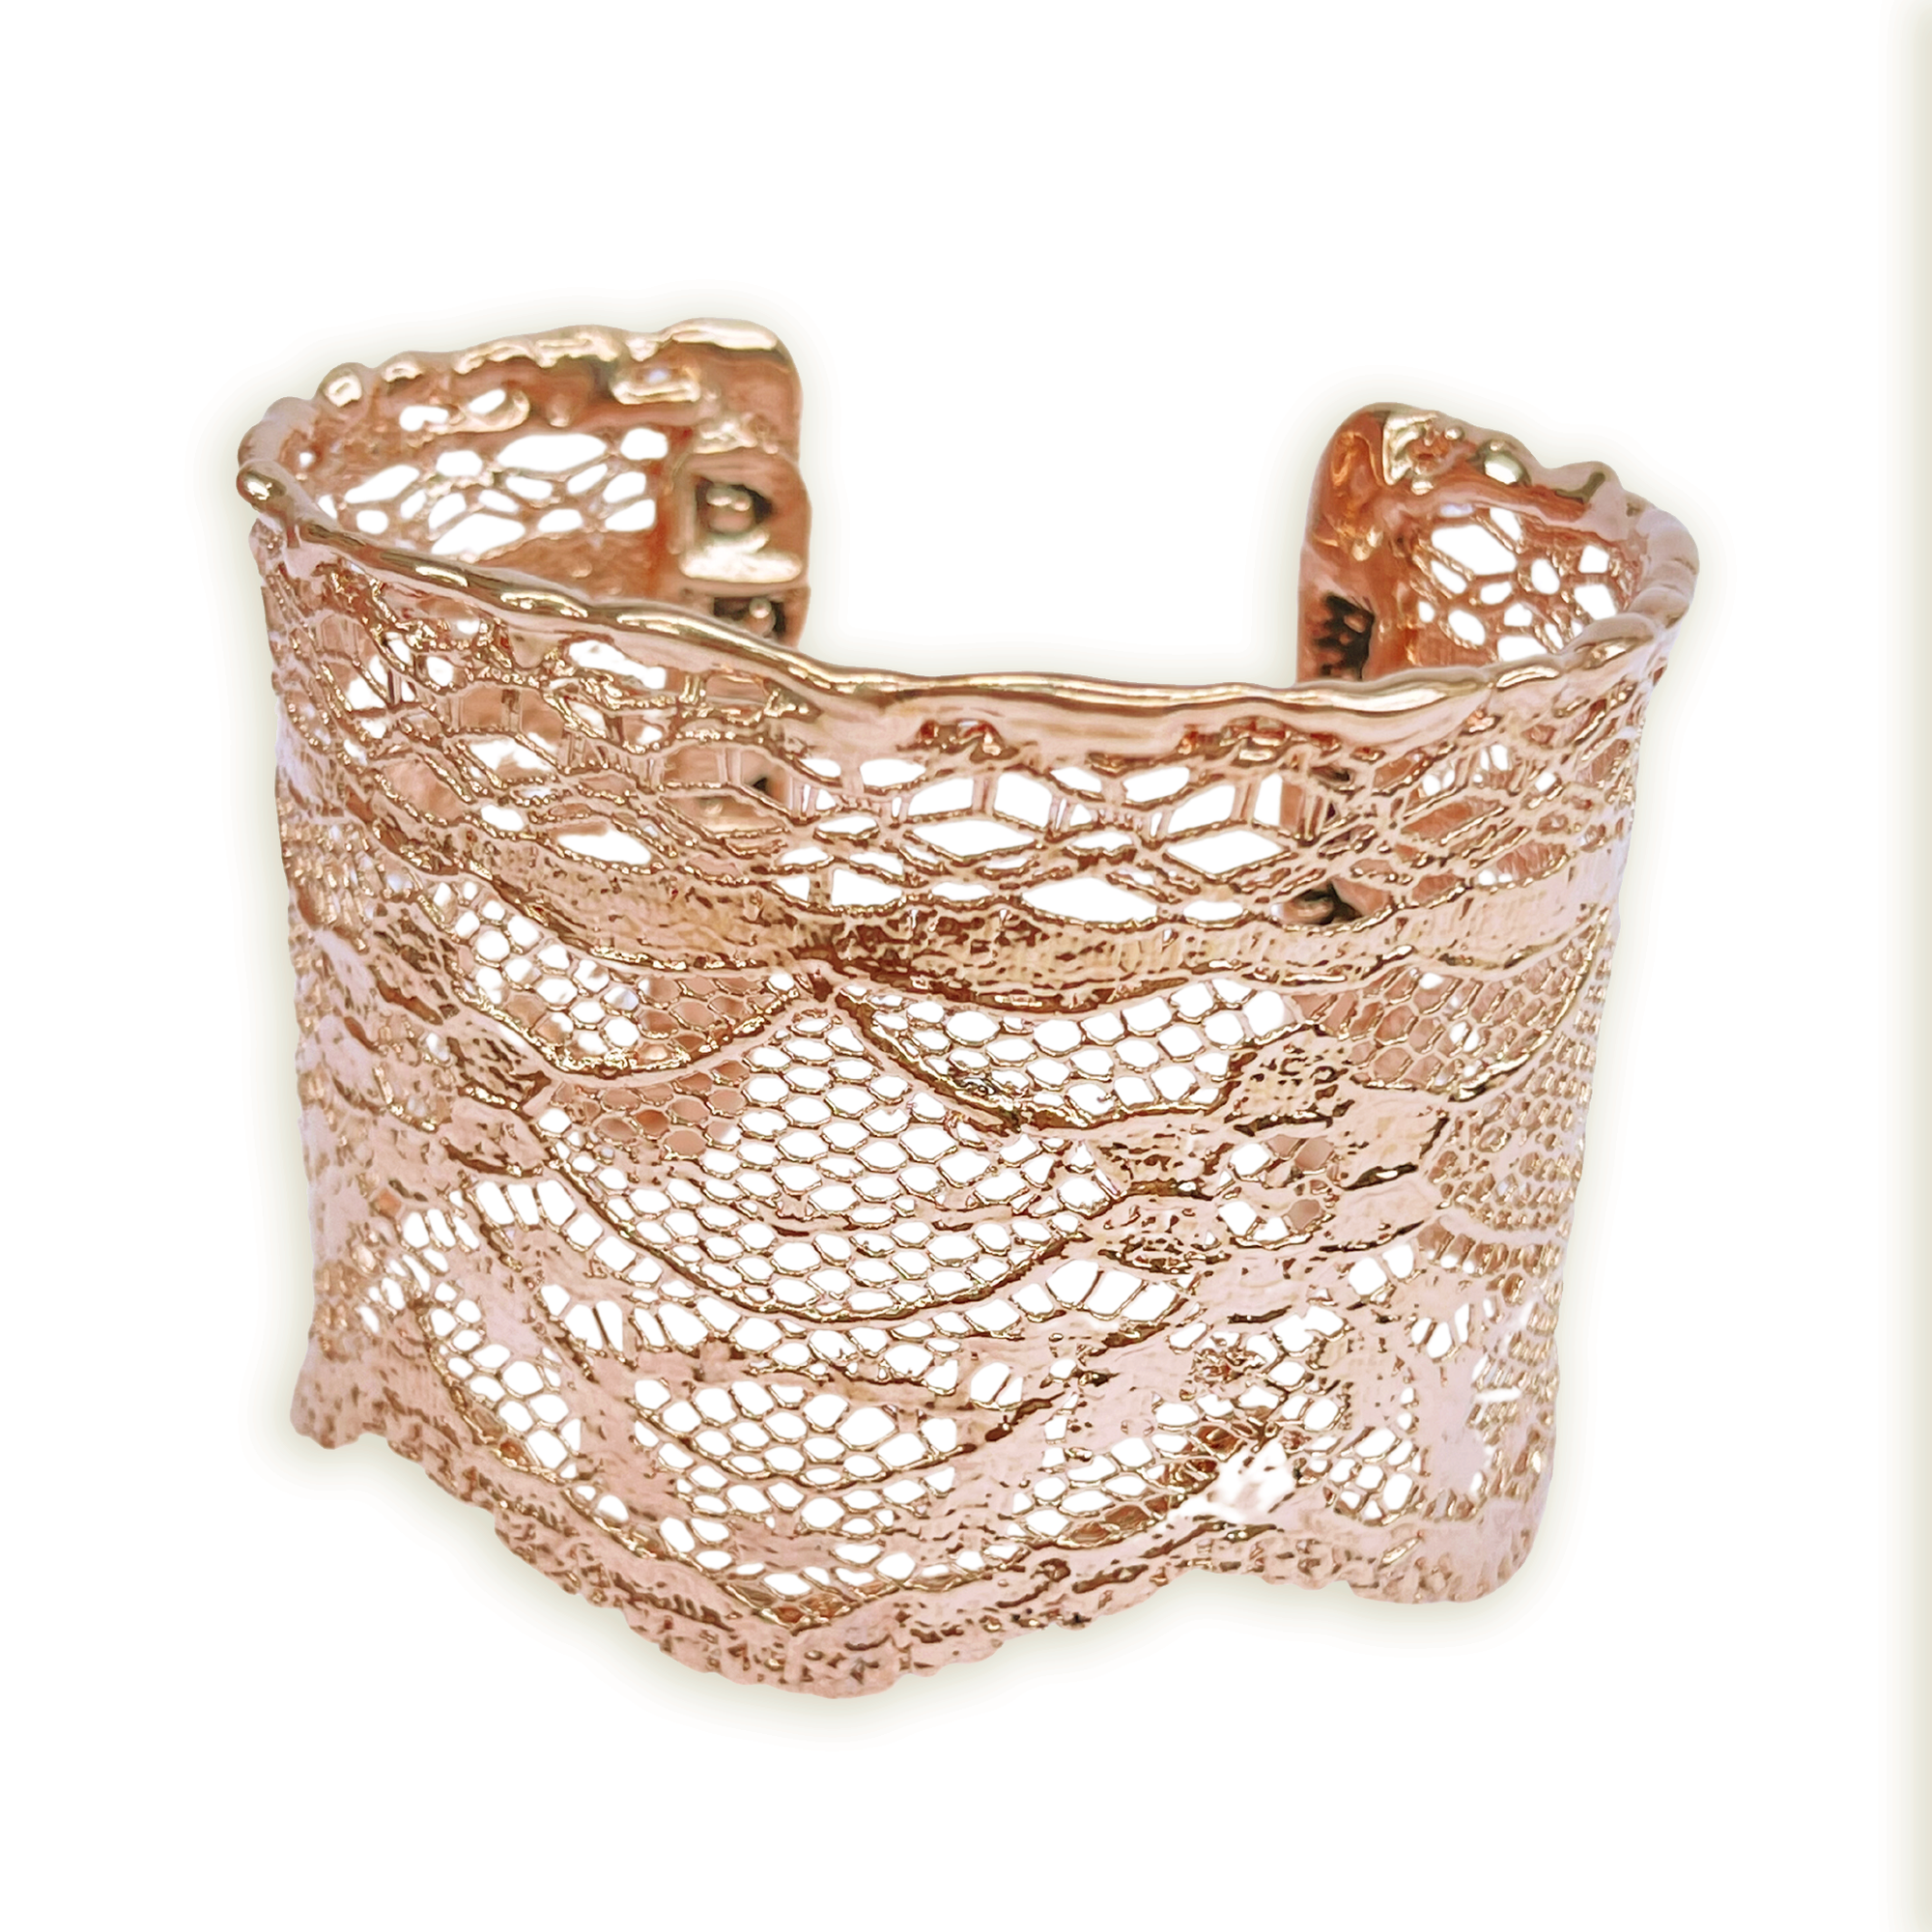 Intricate lace cuff bracelet in rose gold.